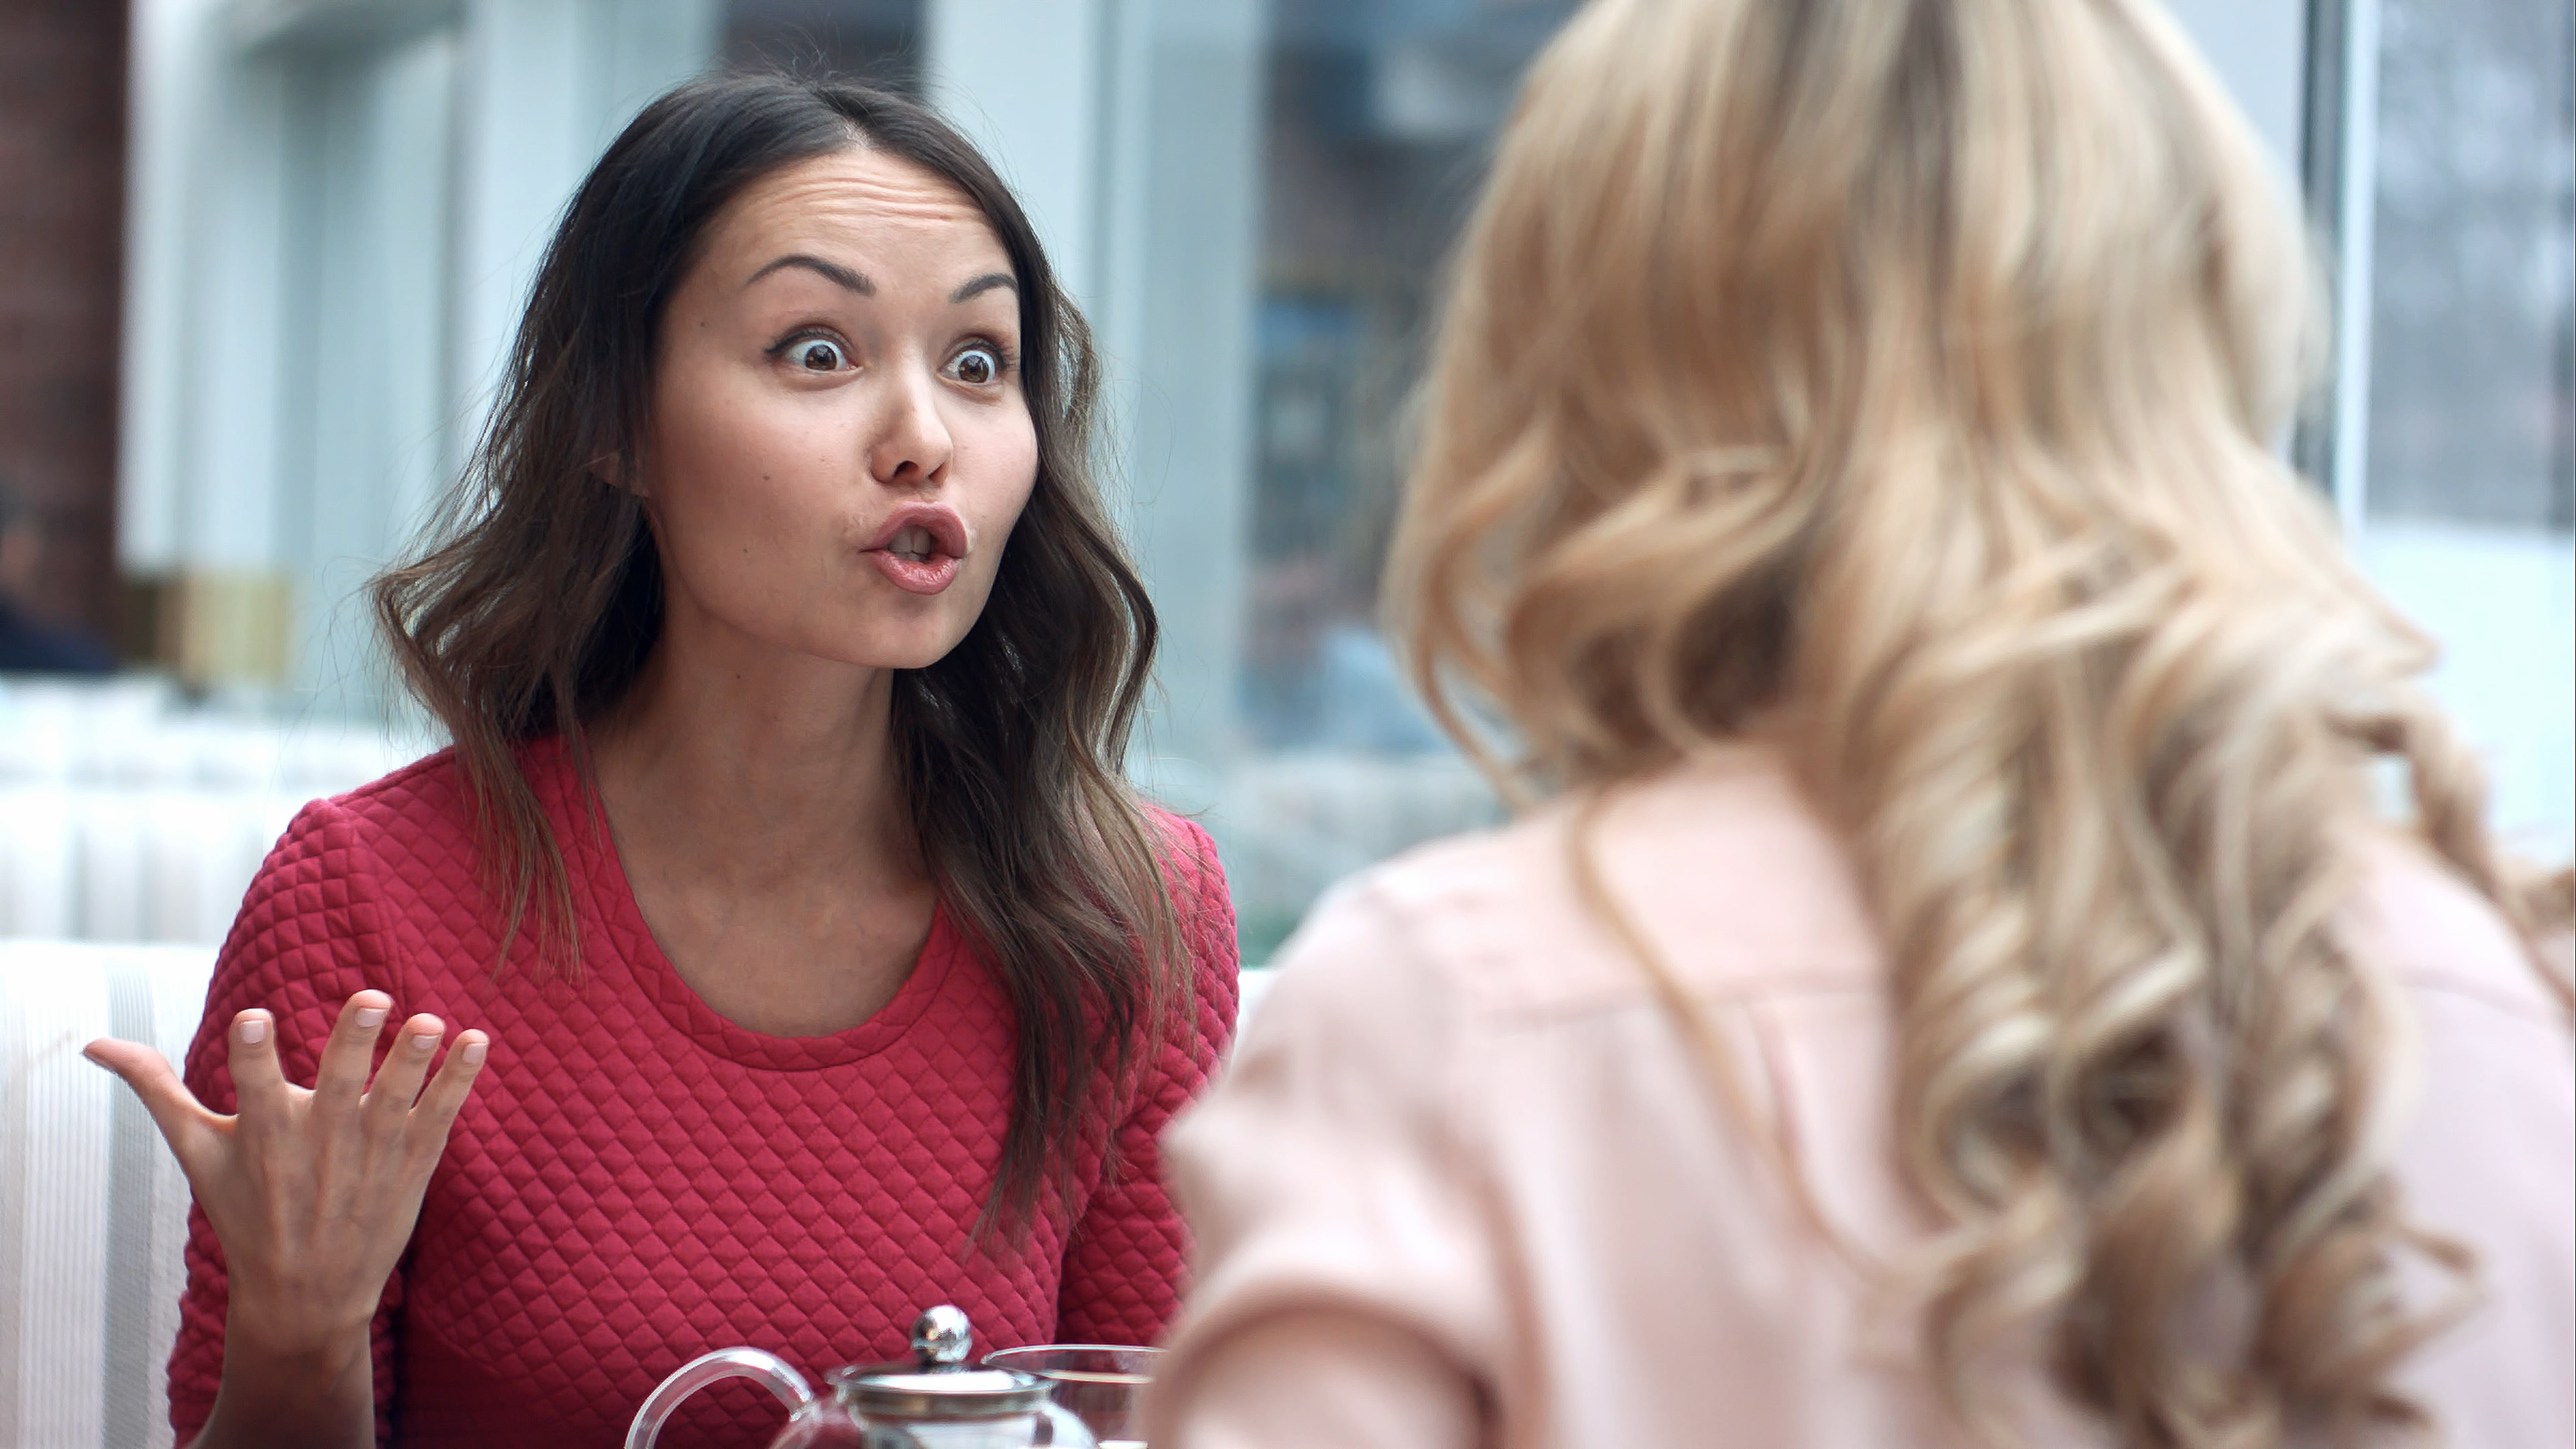 Deux jeunes femmes se disputent dans un café | Source : Shutterstock